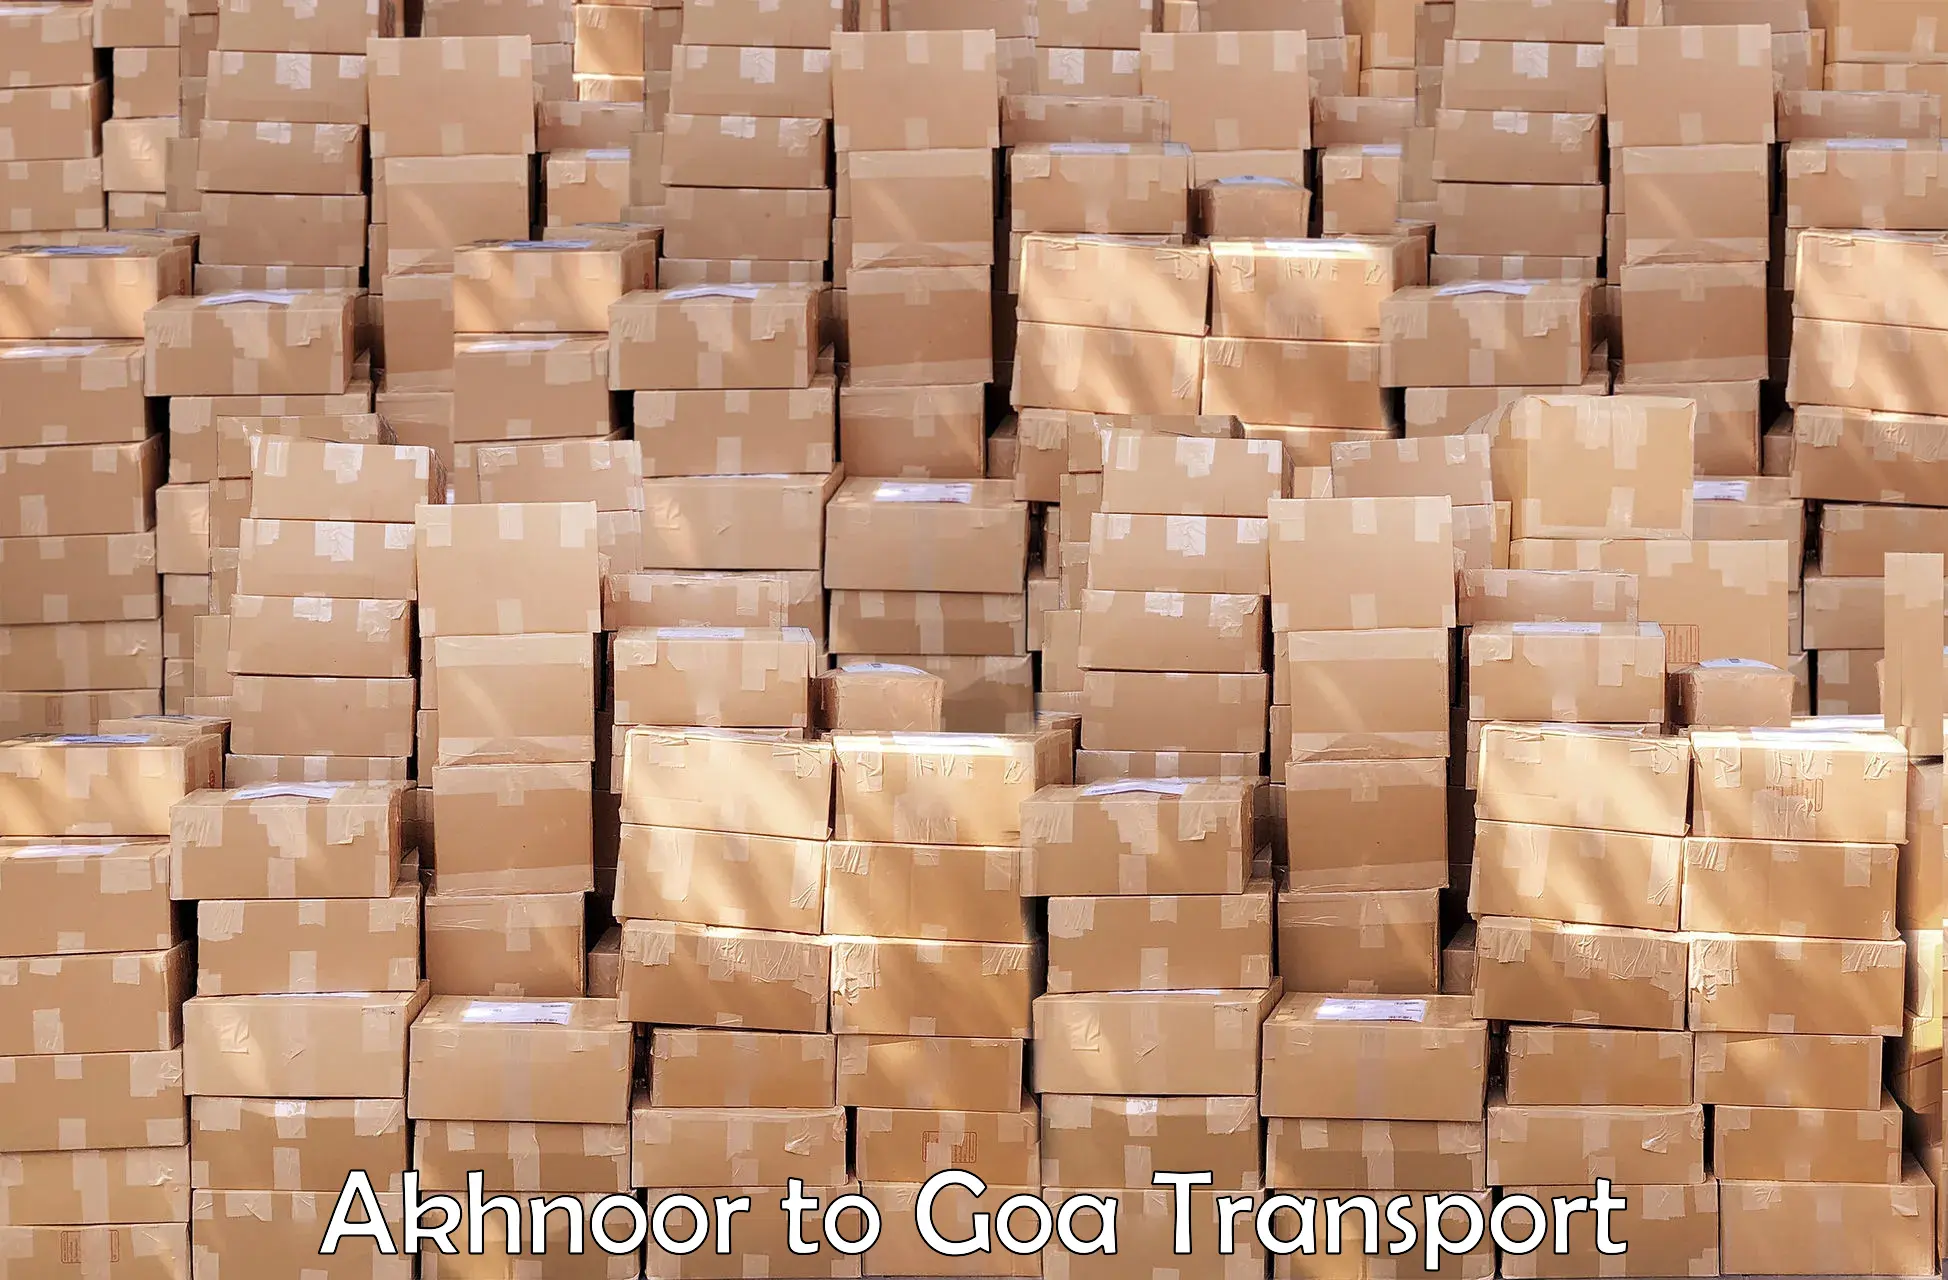 Cargo transportation services Akhnoor to Mormugao Port